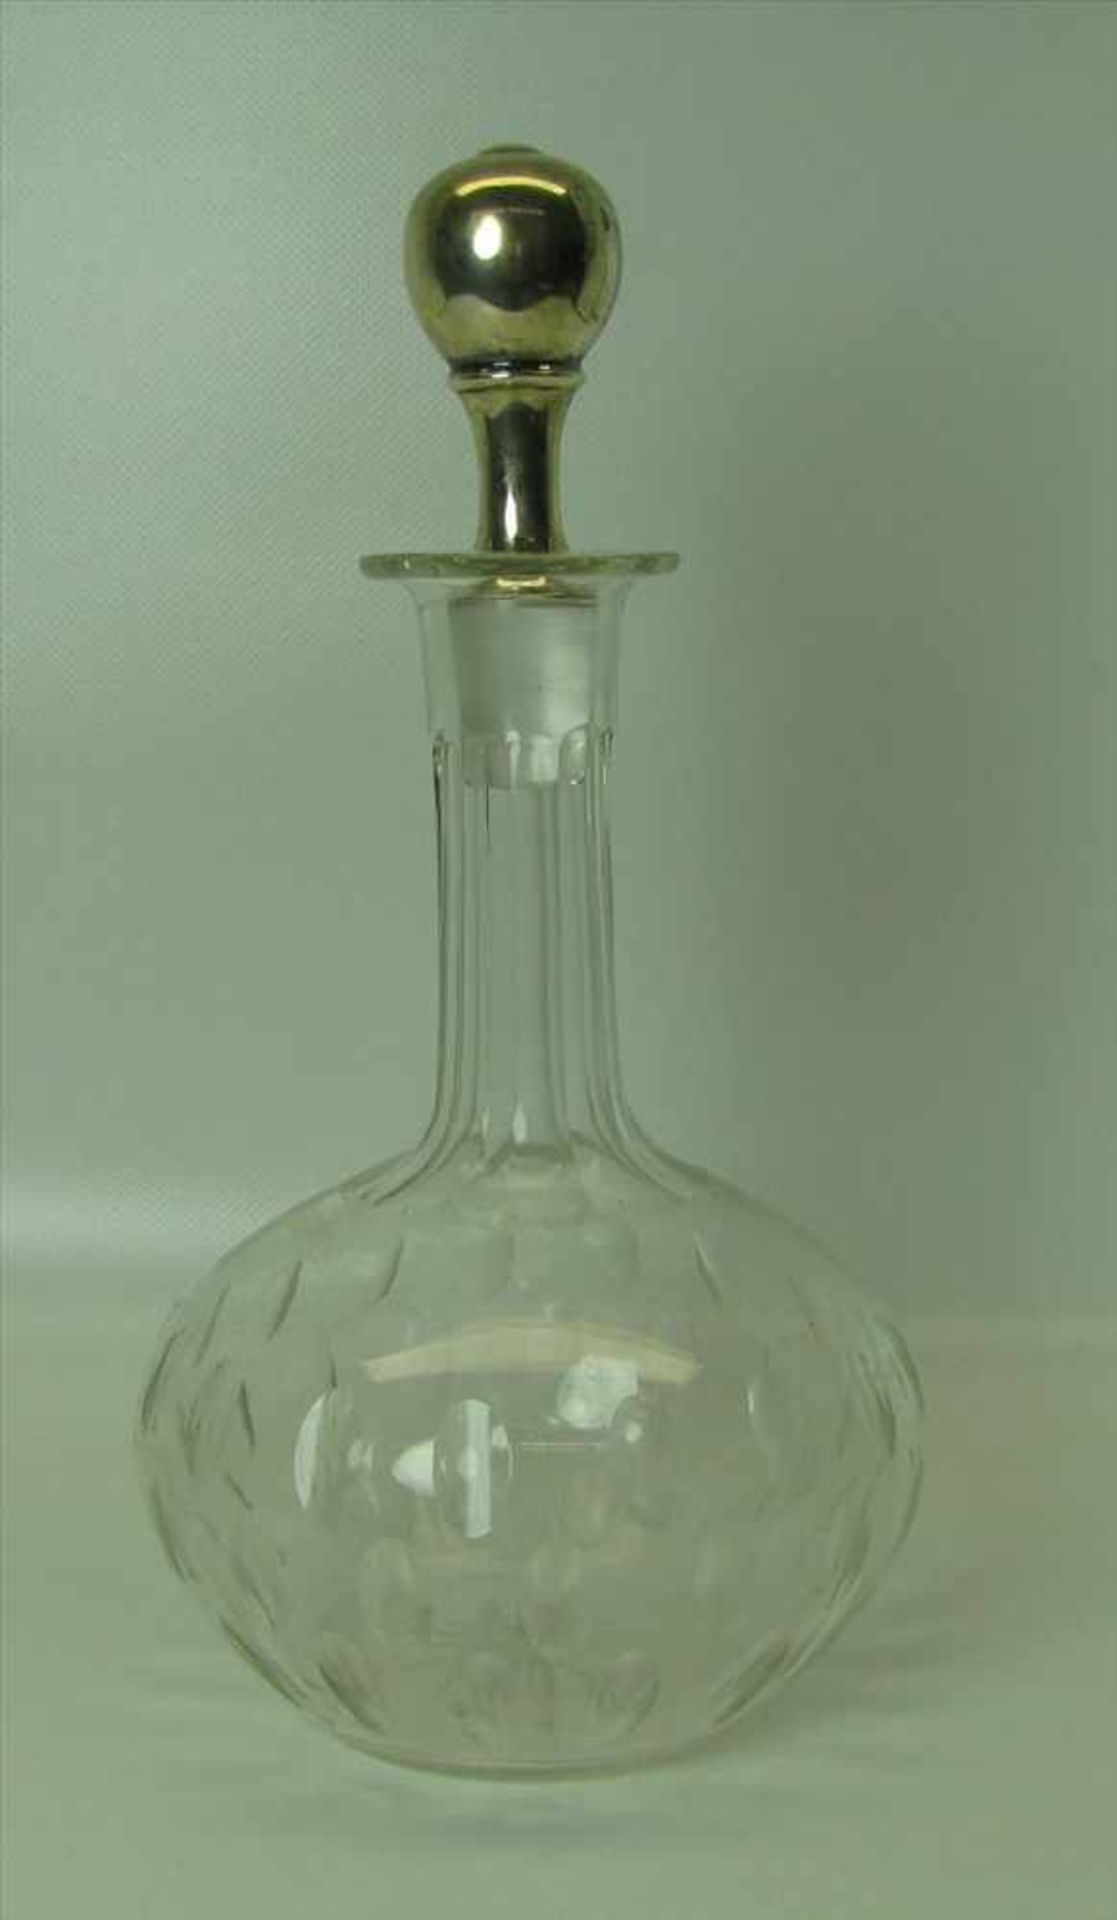 Karaffe mit Stöpsel, um 1900, Bleikristall beschliffen, Stöpsel Silber, h 30 cm, d 15 cm.